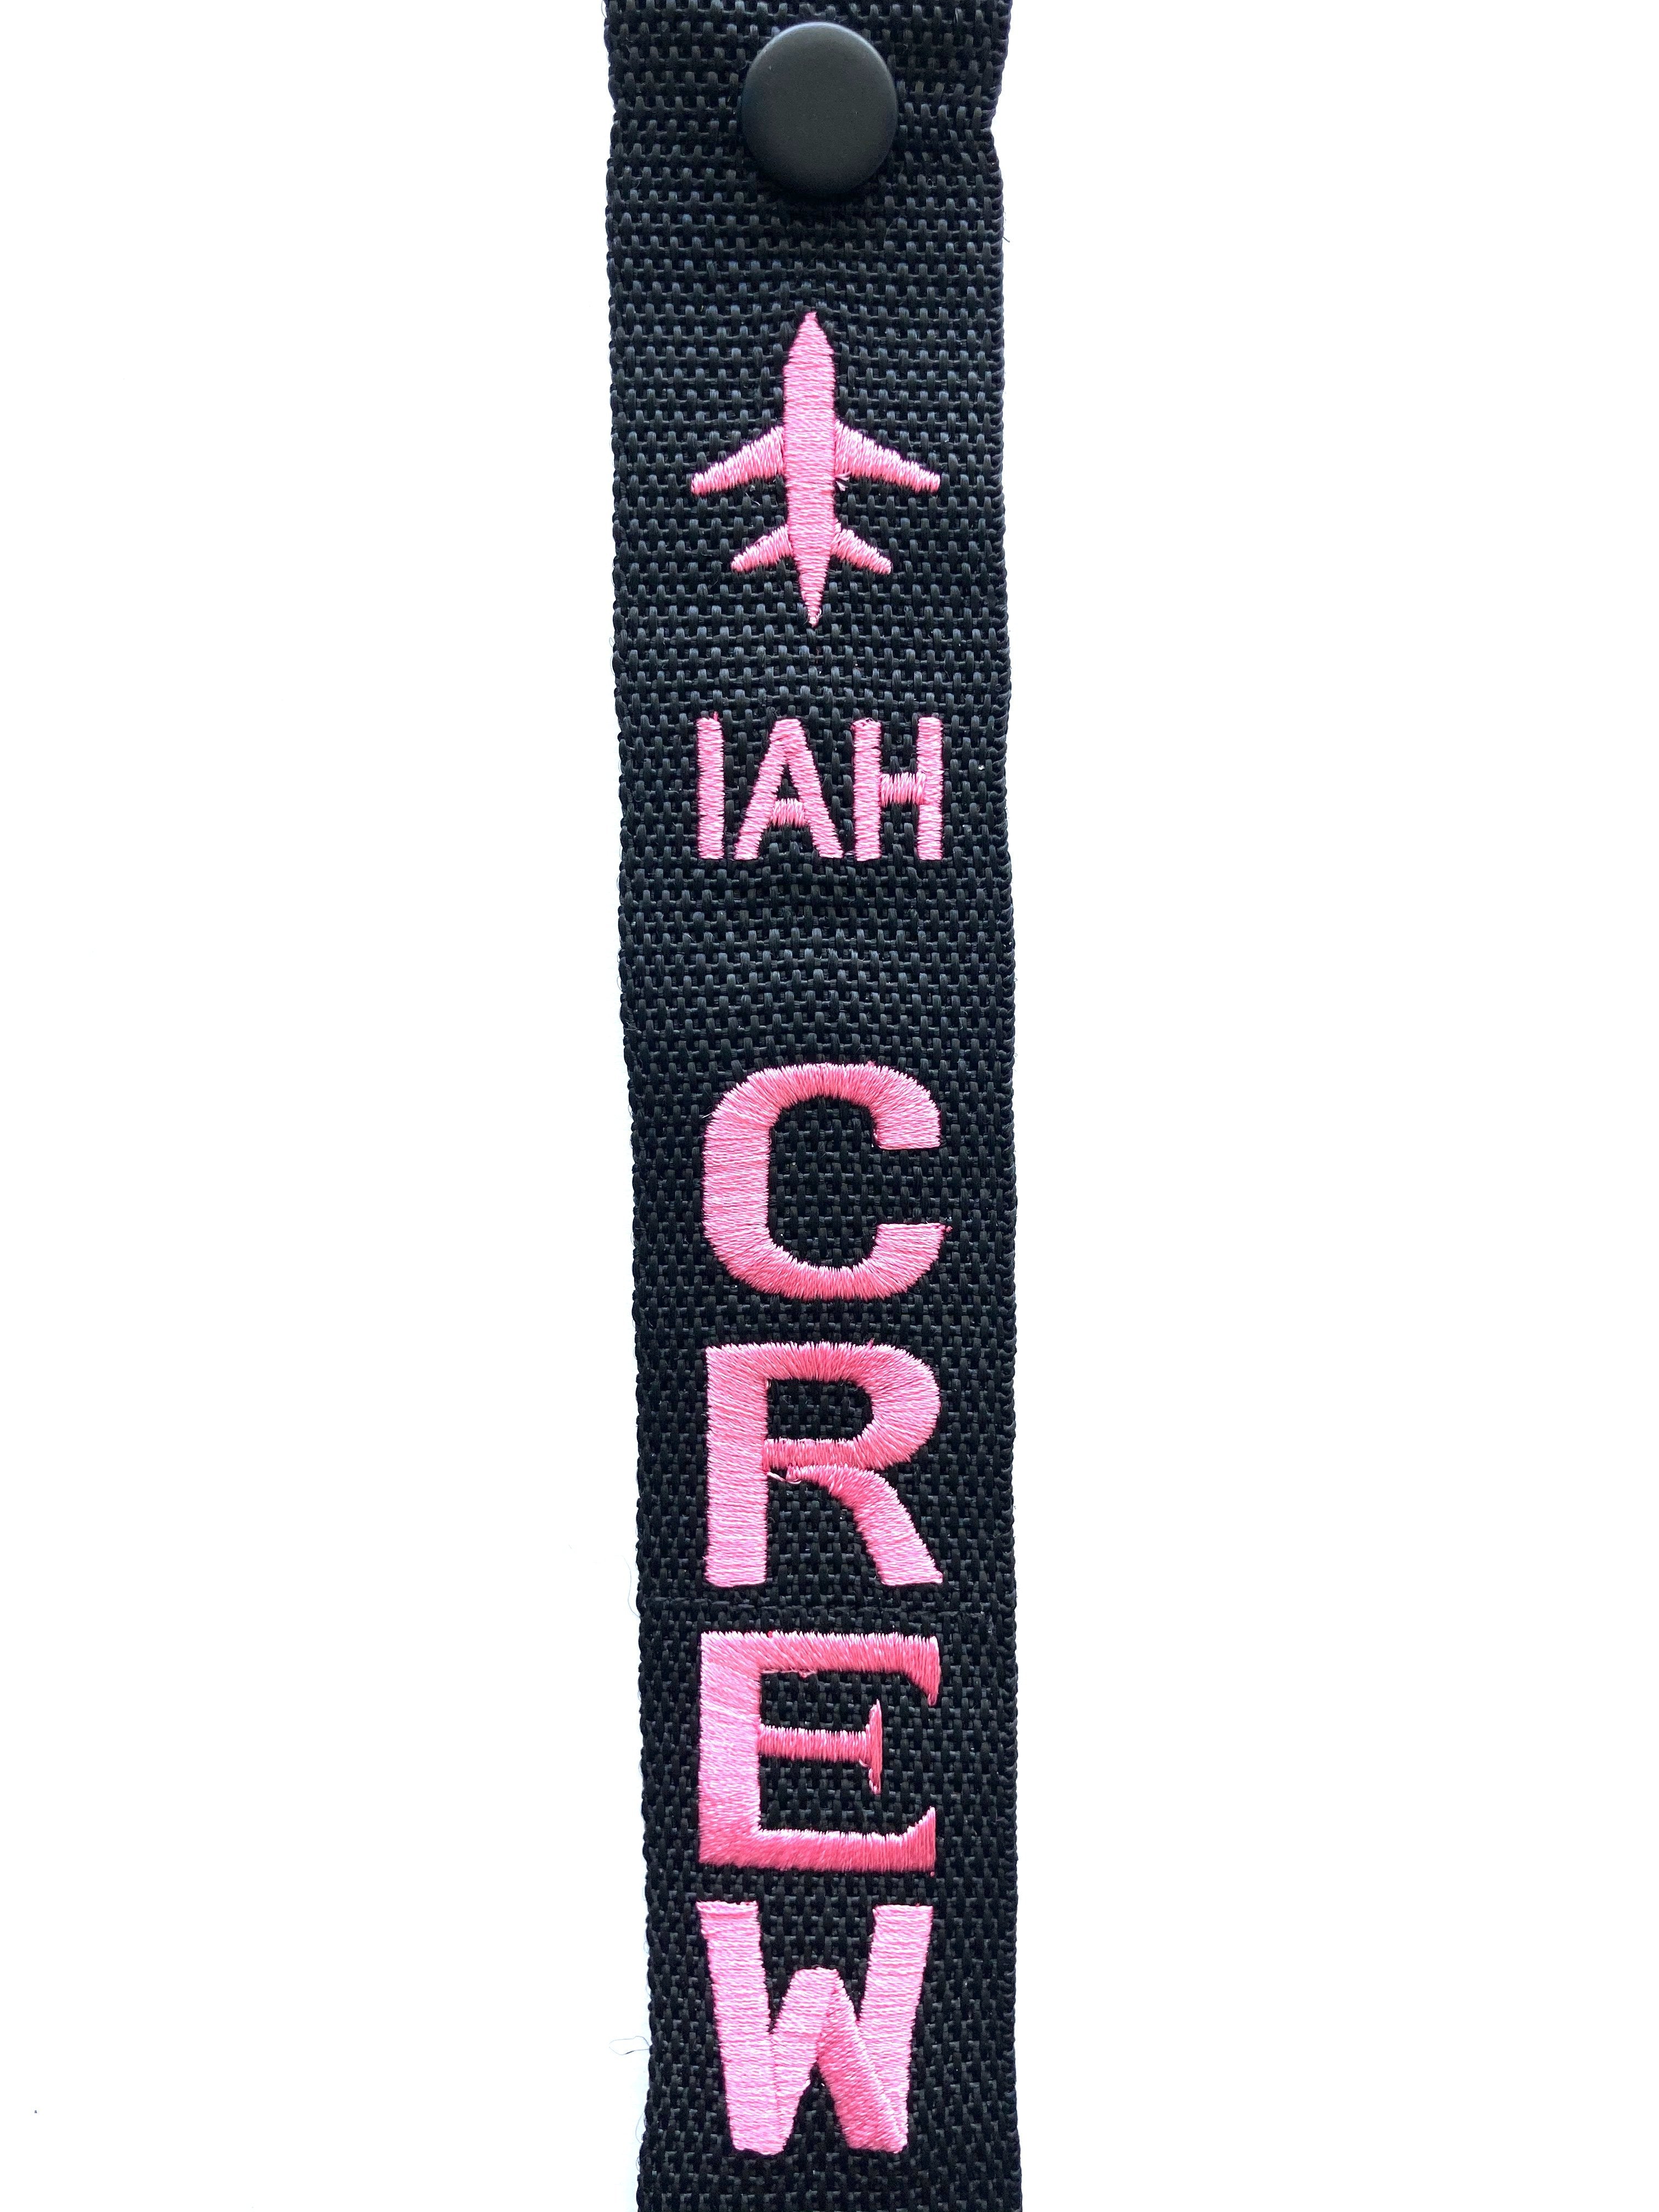 CREW Luggage Tag - IAH Pink